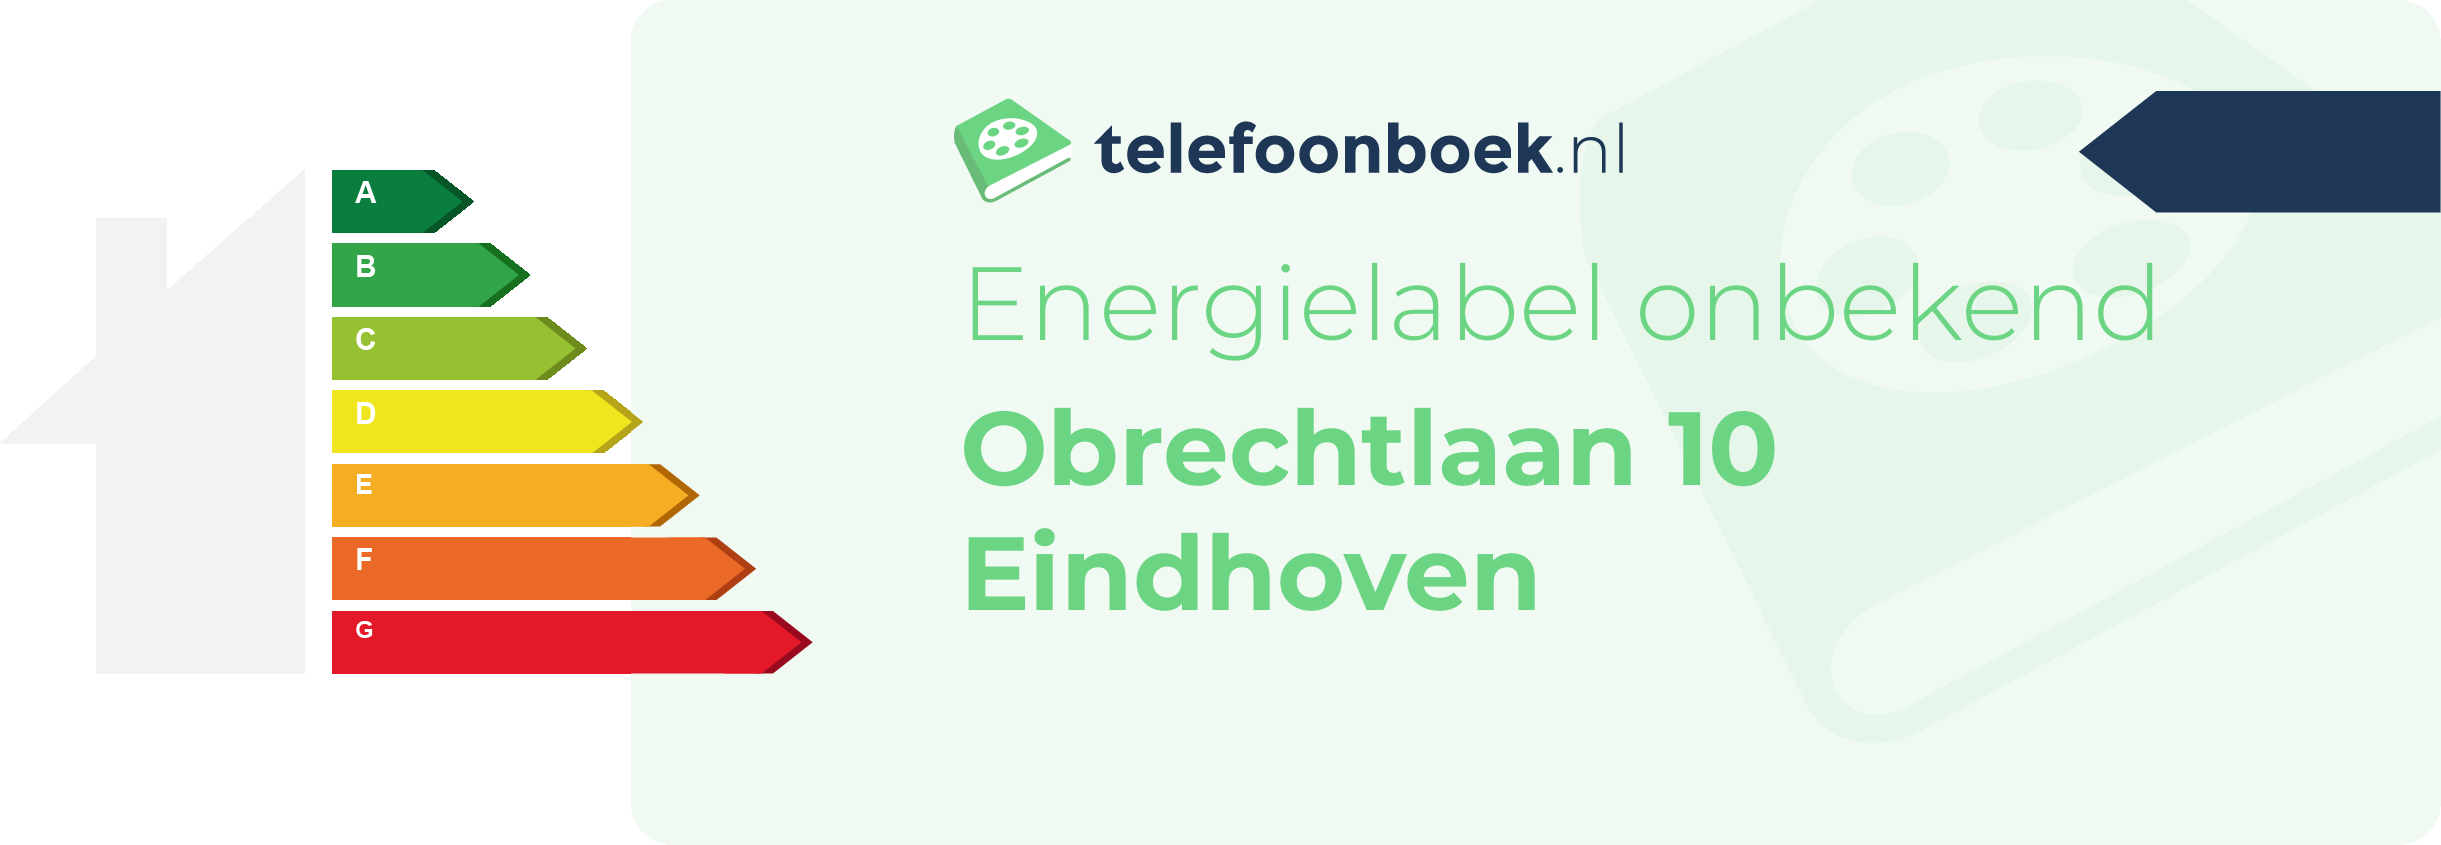 Energielabel Obrechtlaan 10 Eindhoven